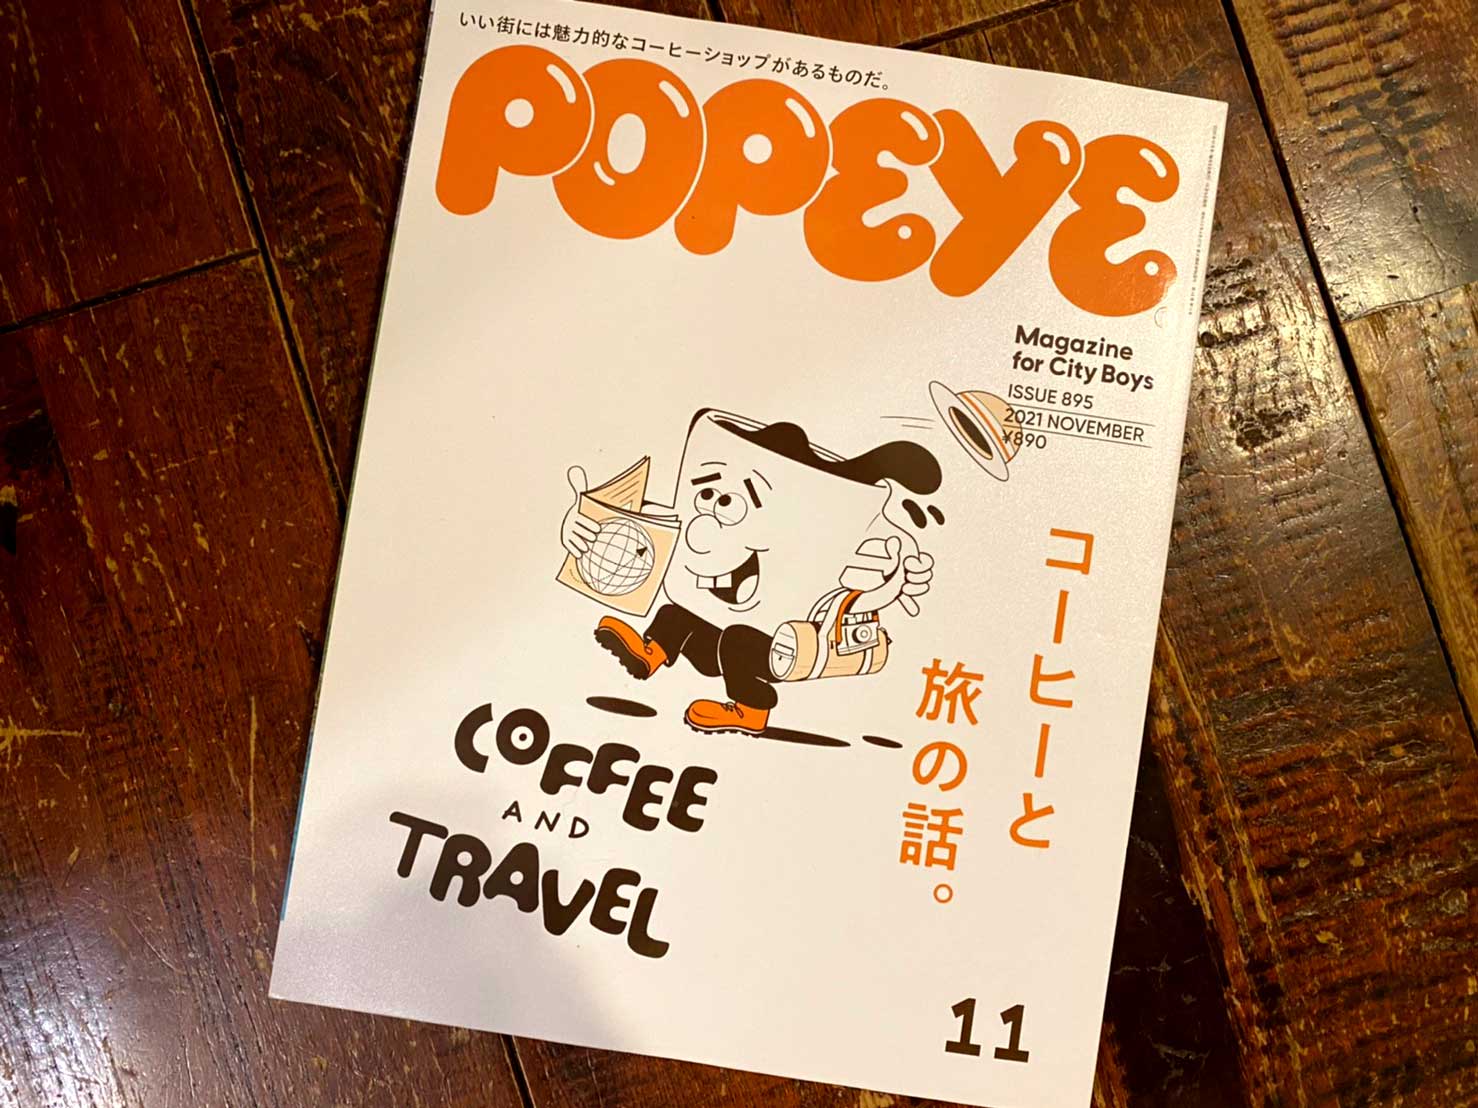 雑誌 ポパイ『コーヒーと旅の話』に掲載していただきました!